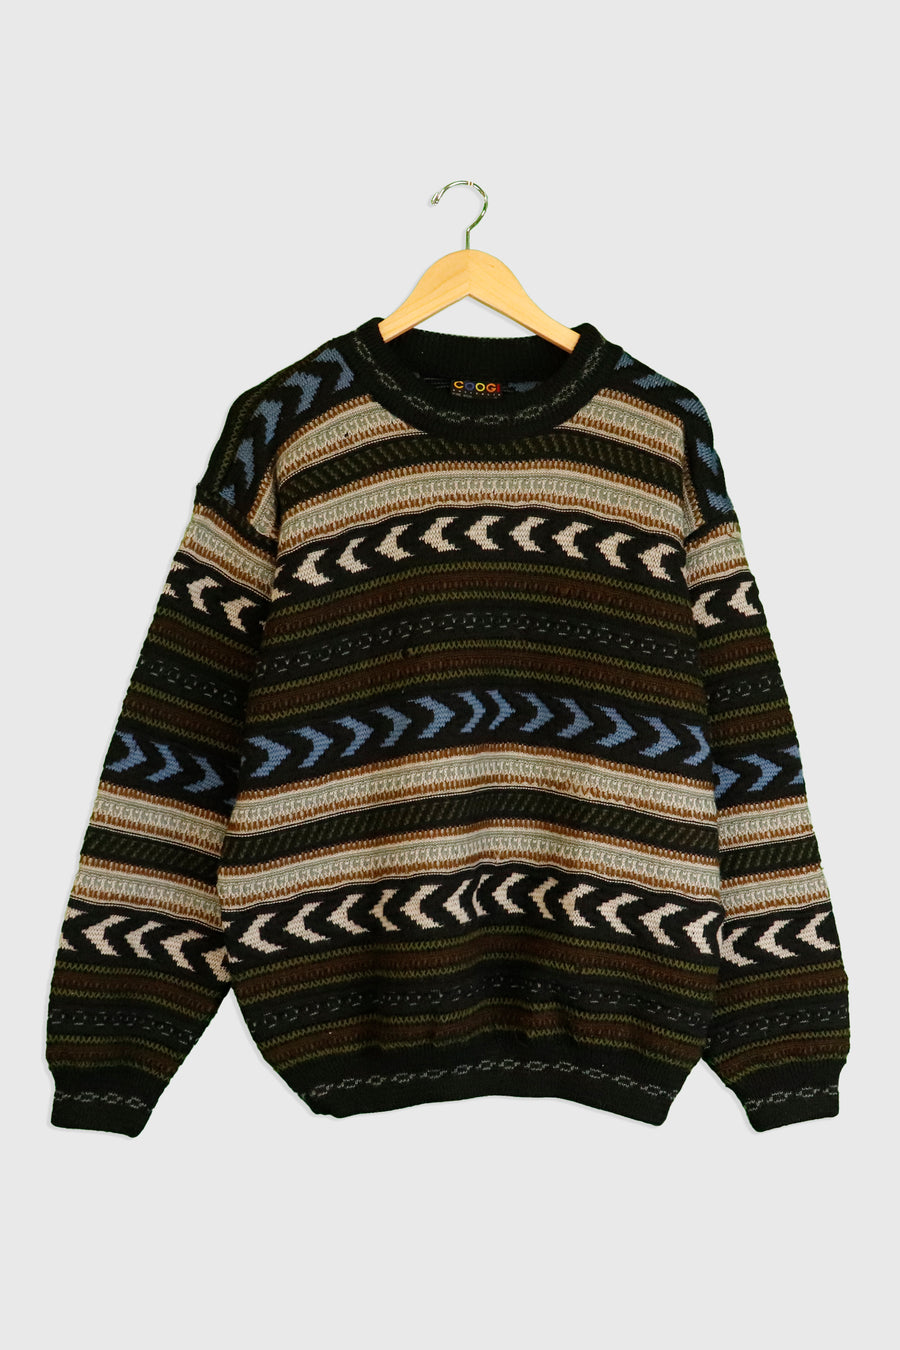 Vintage Coogi Multi Colour knit Sweater Sz M